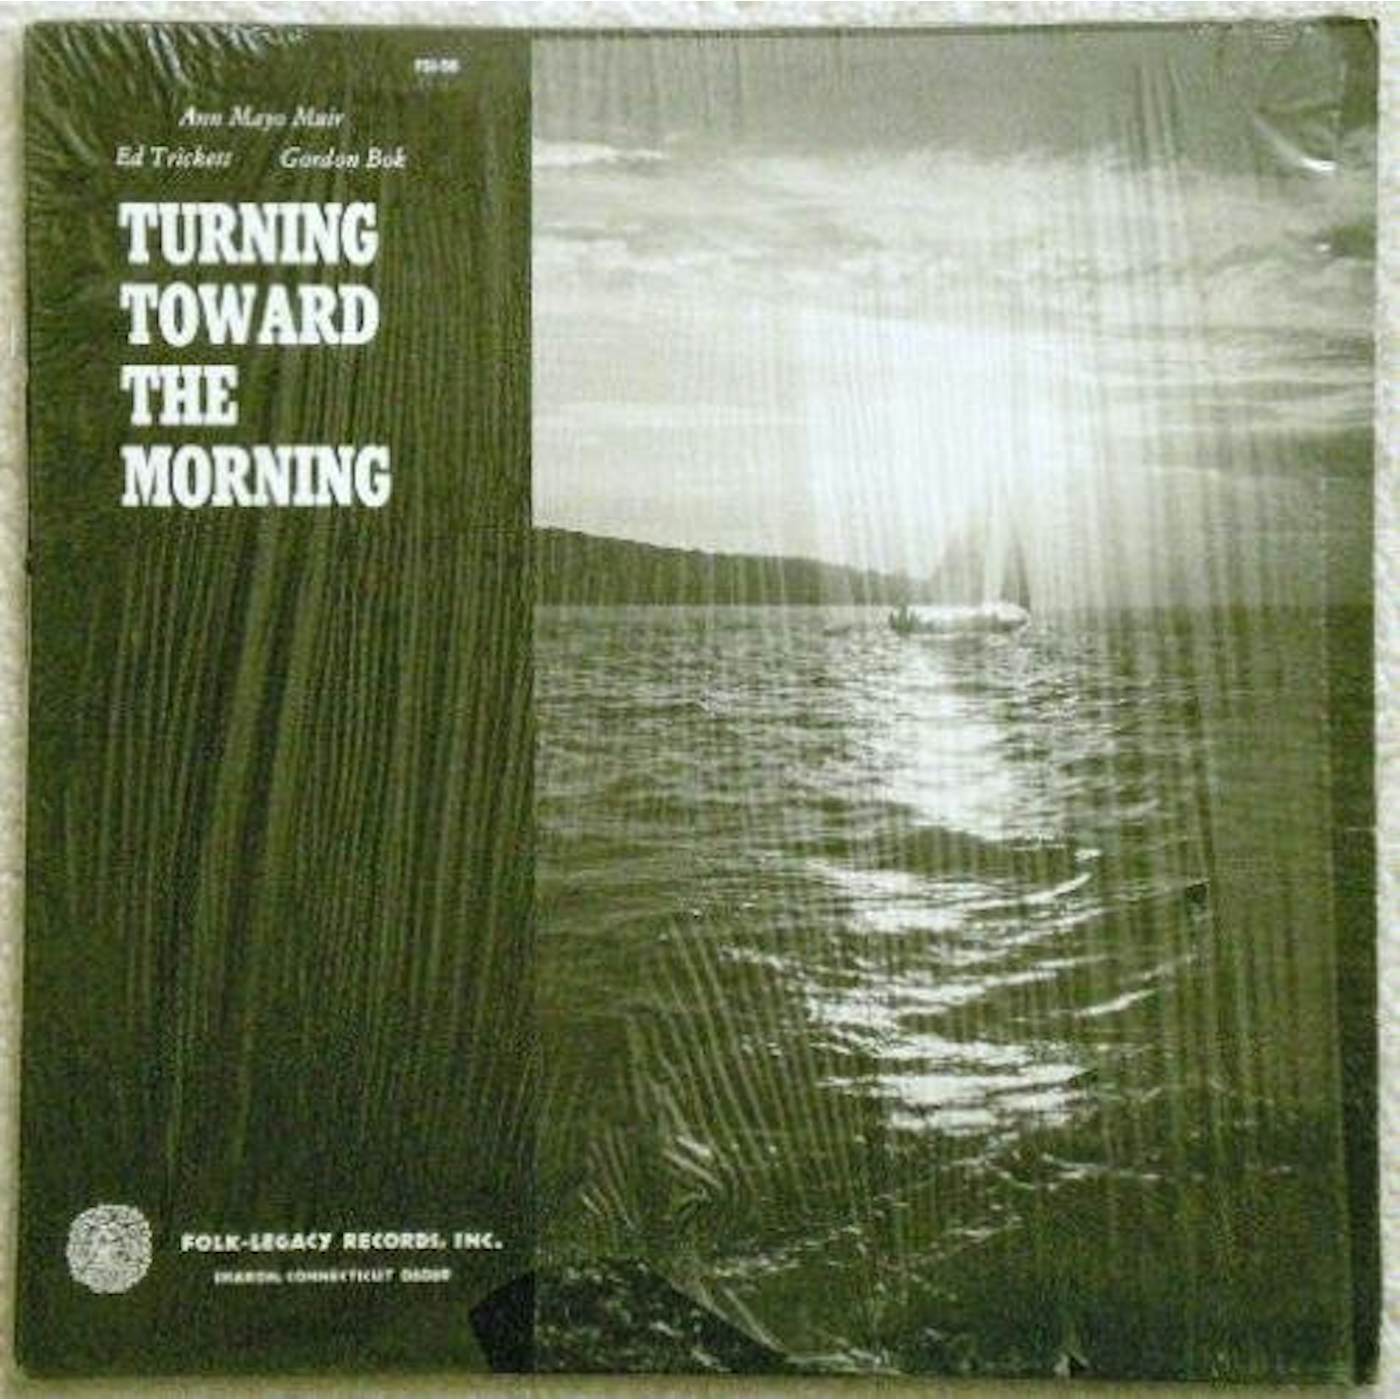 Gordon Bok, Ed Trickett, Ann Mayo Muir TURNING TOWARD THE MORNING Vinyl Record